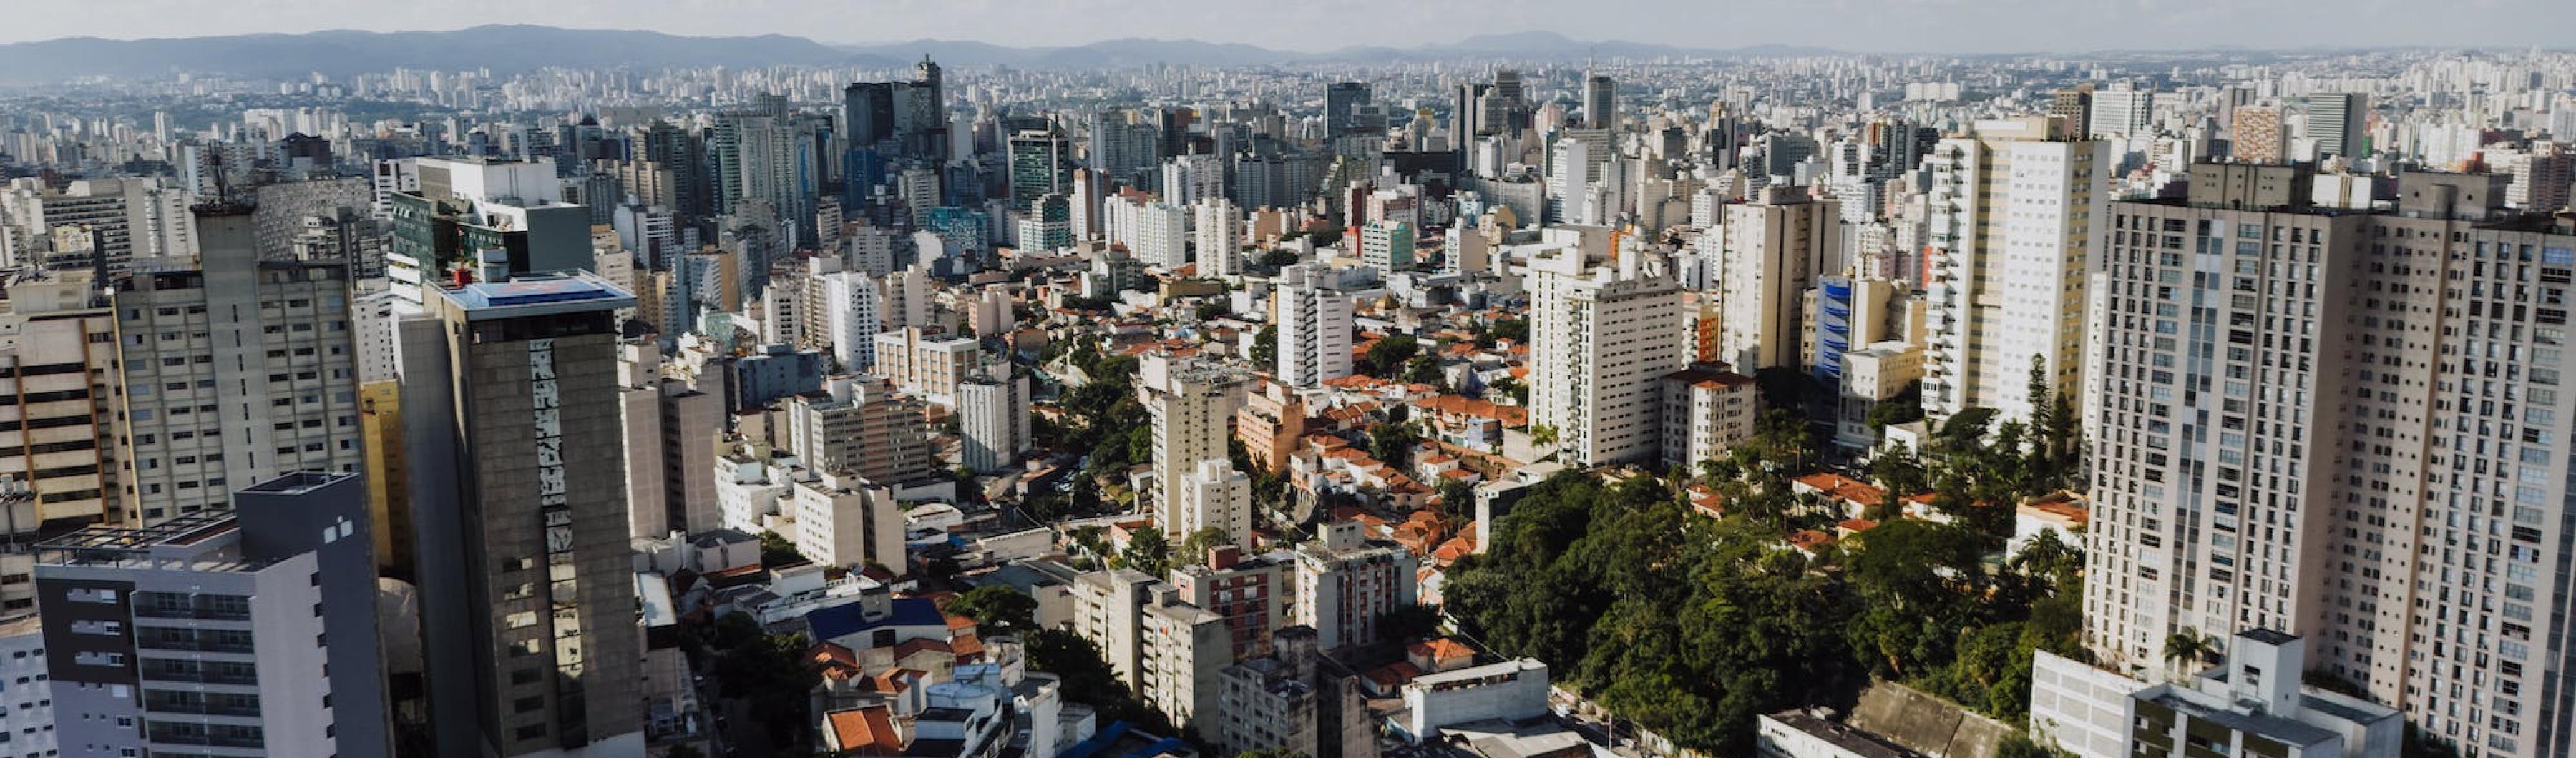 Foto do horizonte de São Paulo